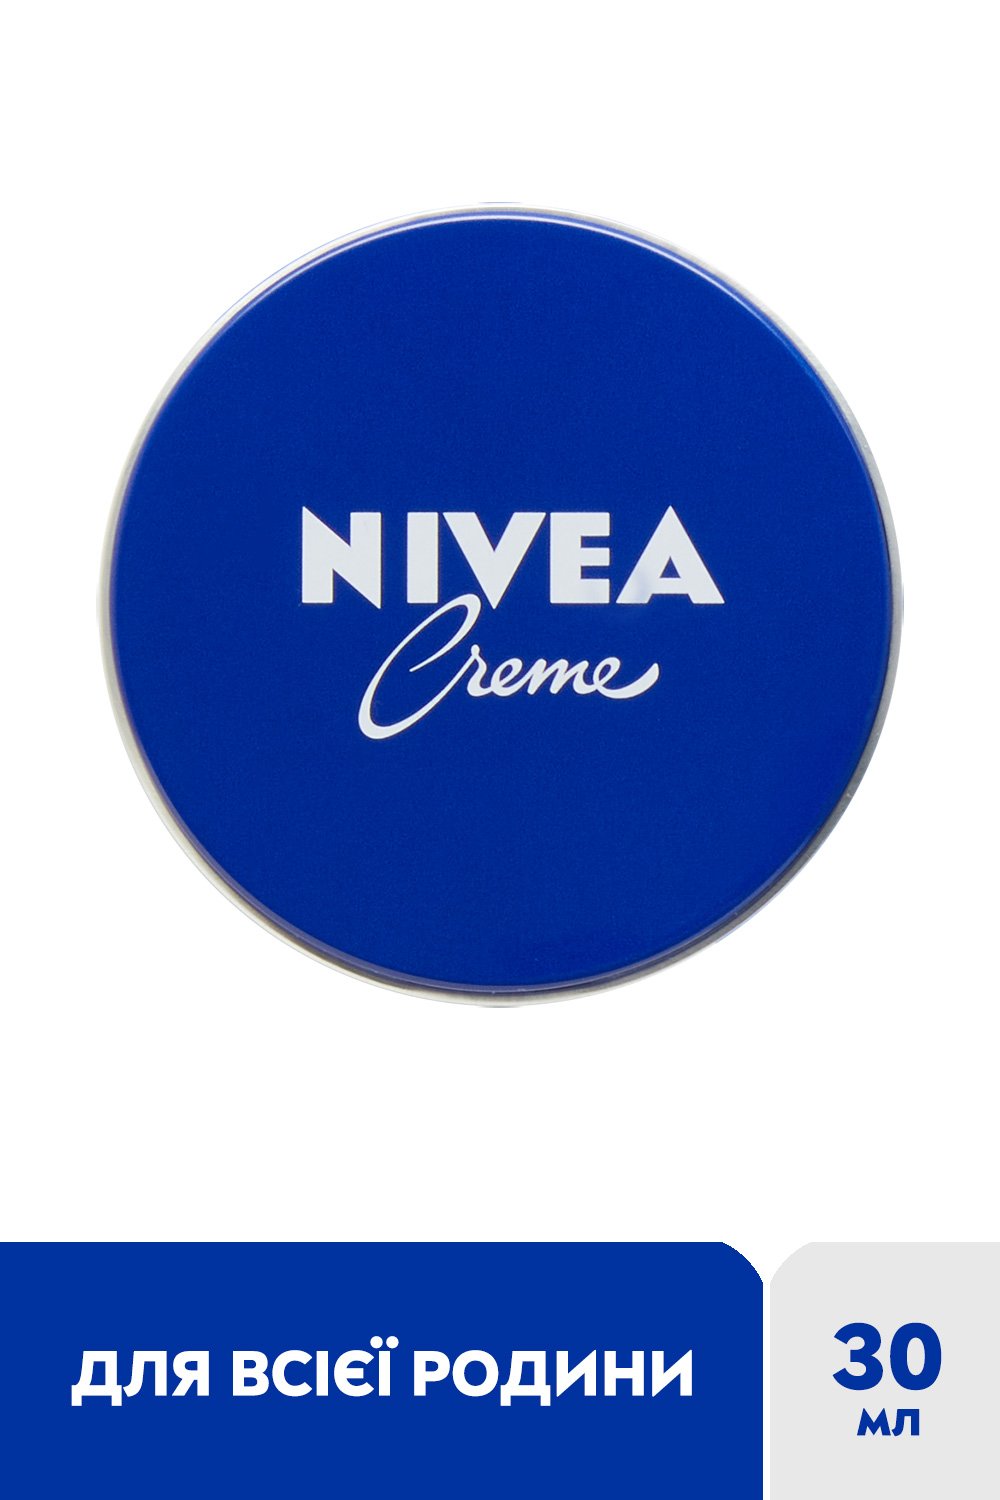 Крем Nivea универсальный, 30 мл (80101) - фото 2